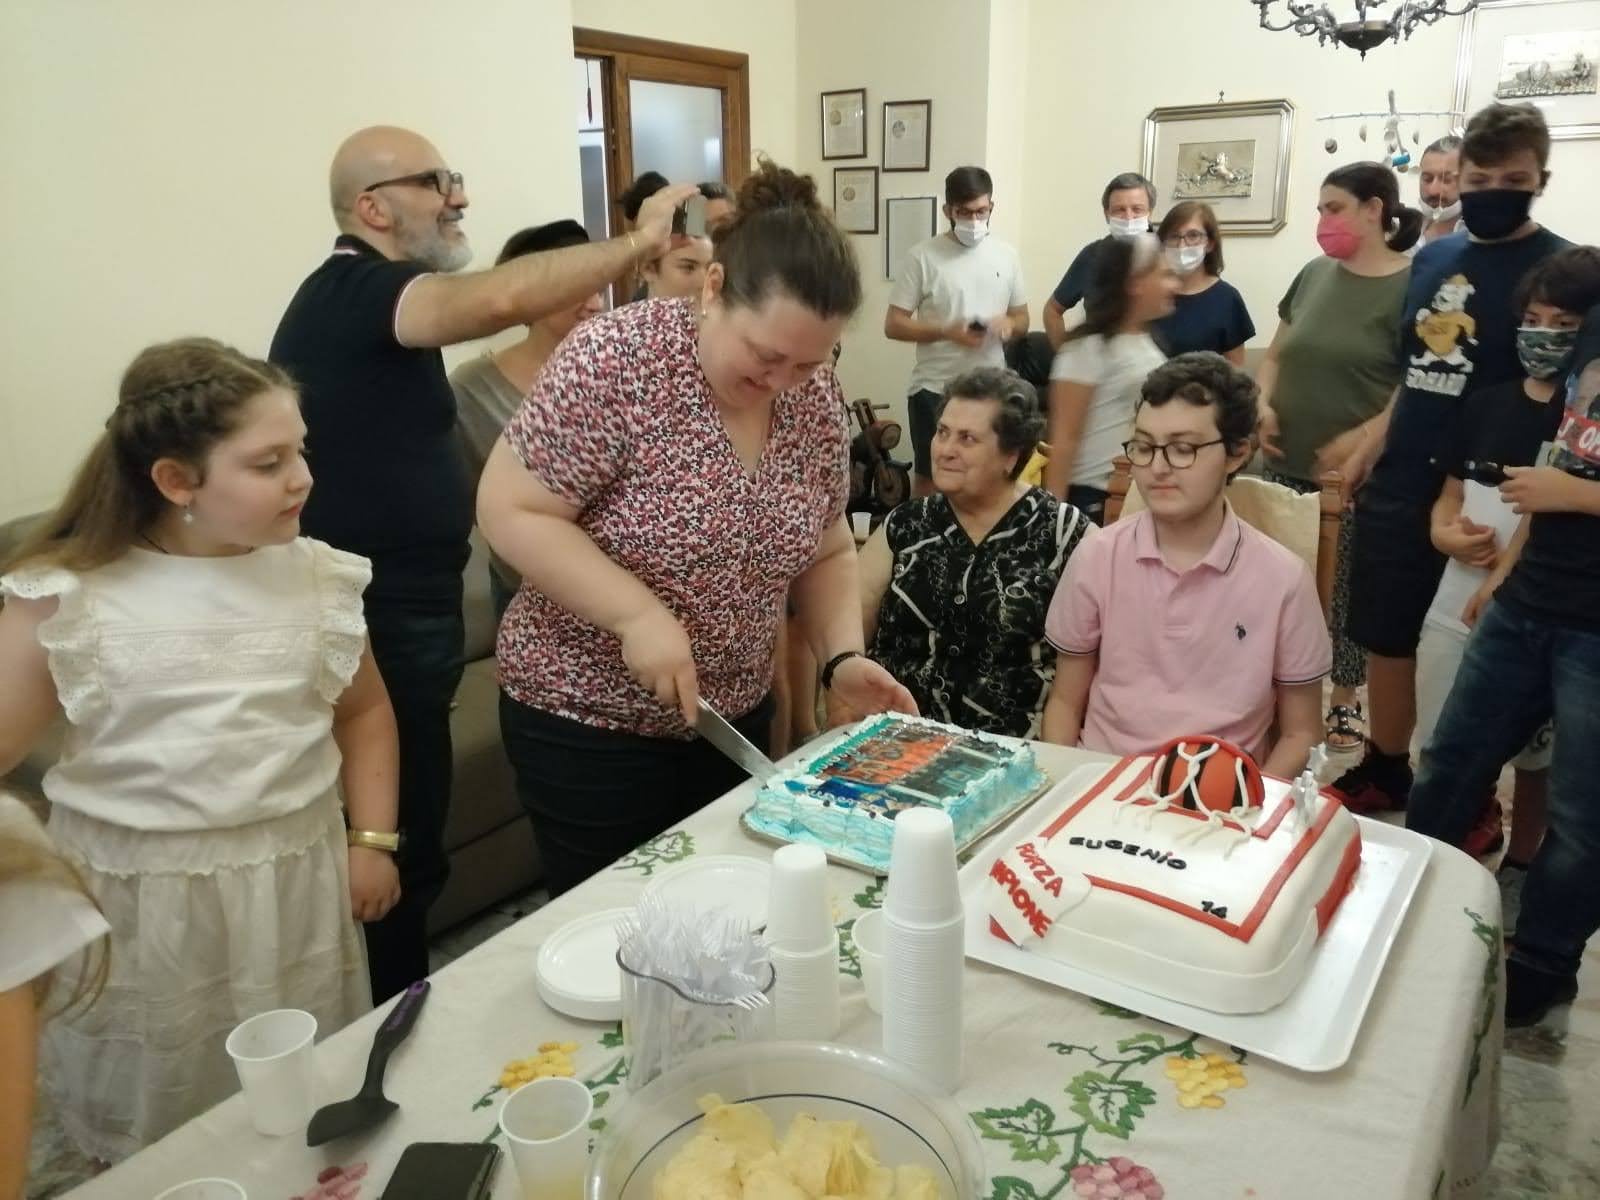 Eugenio's cake cutting